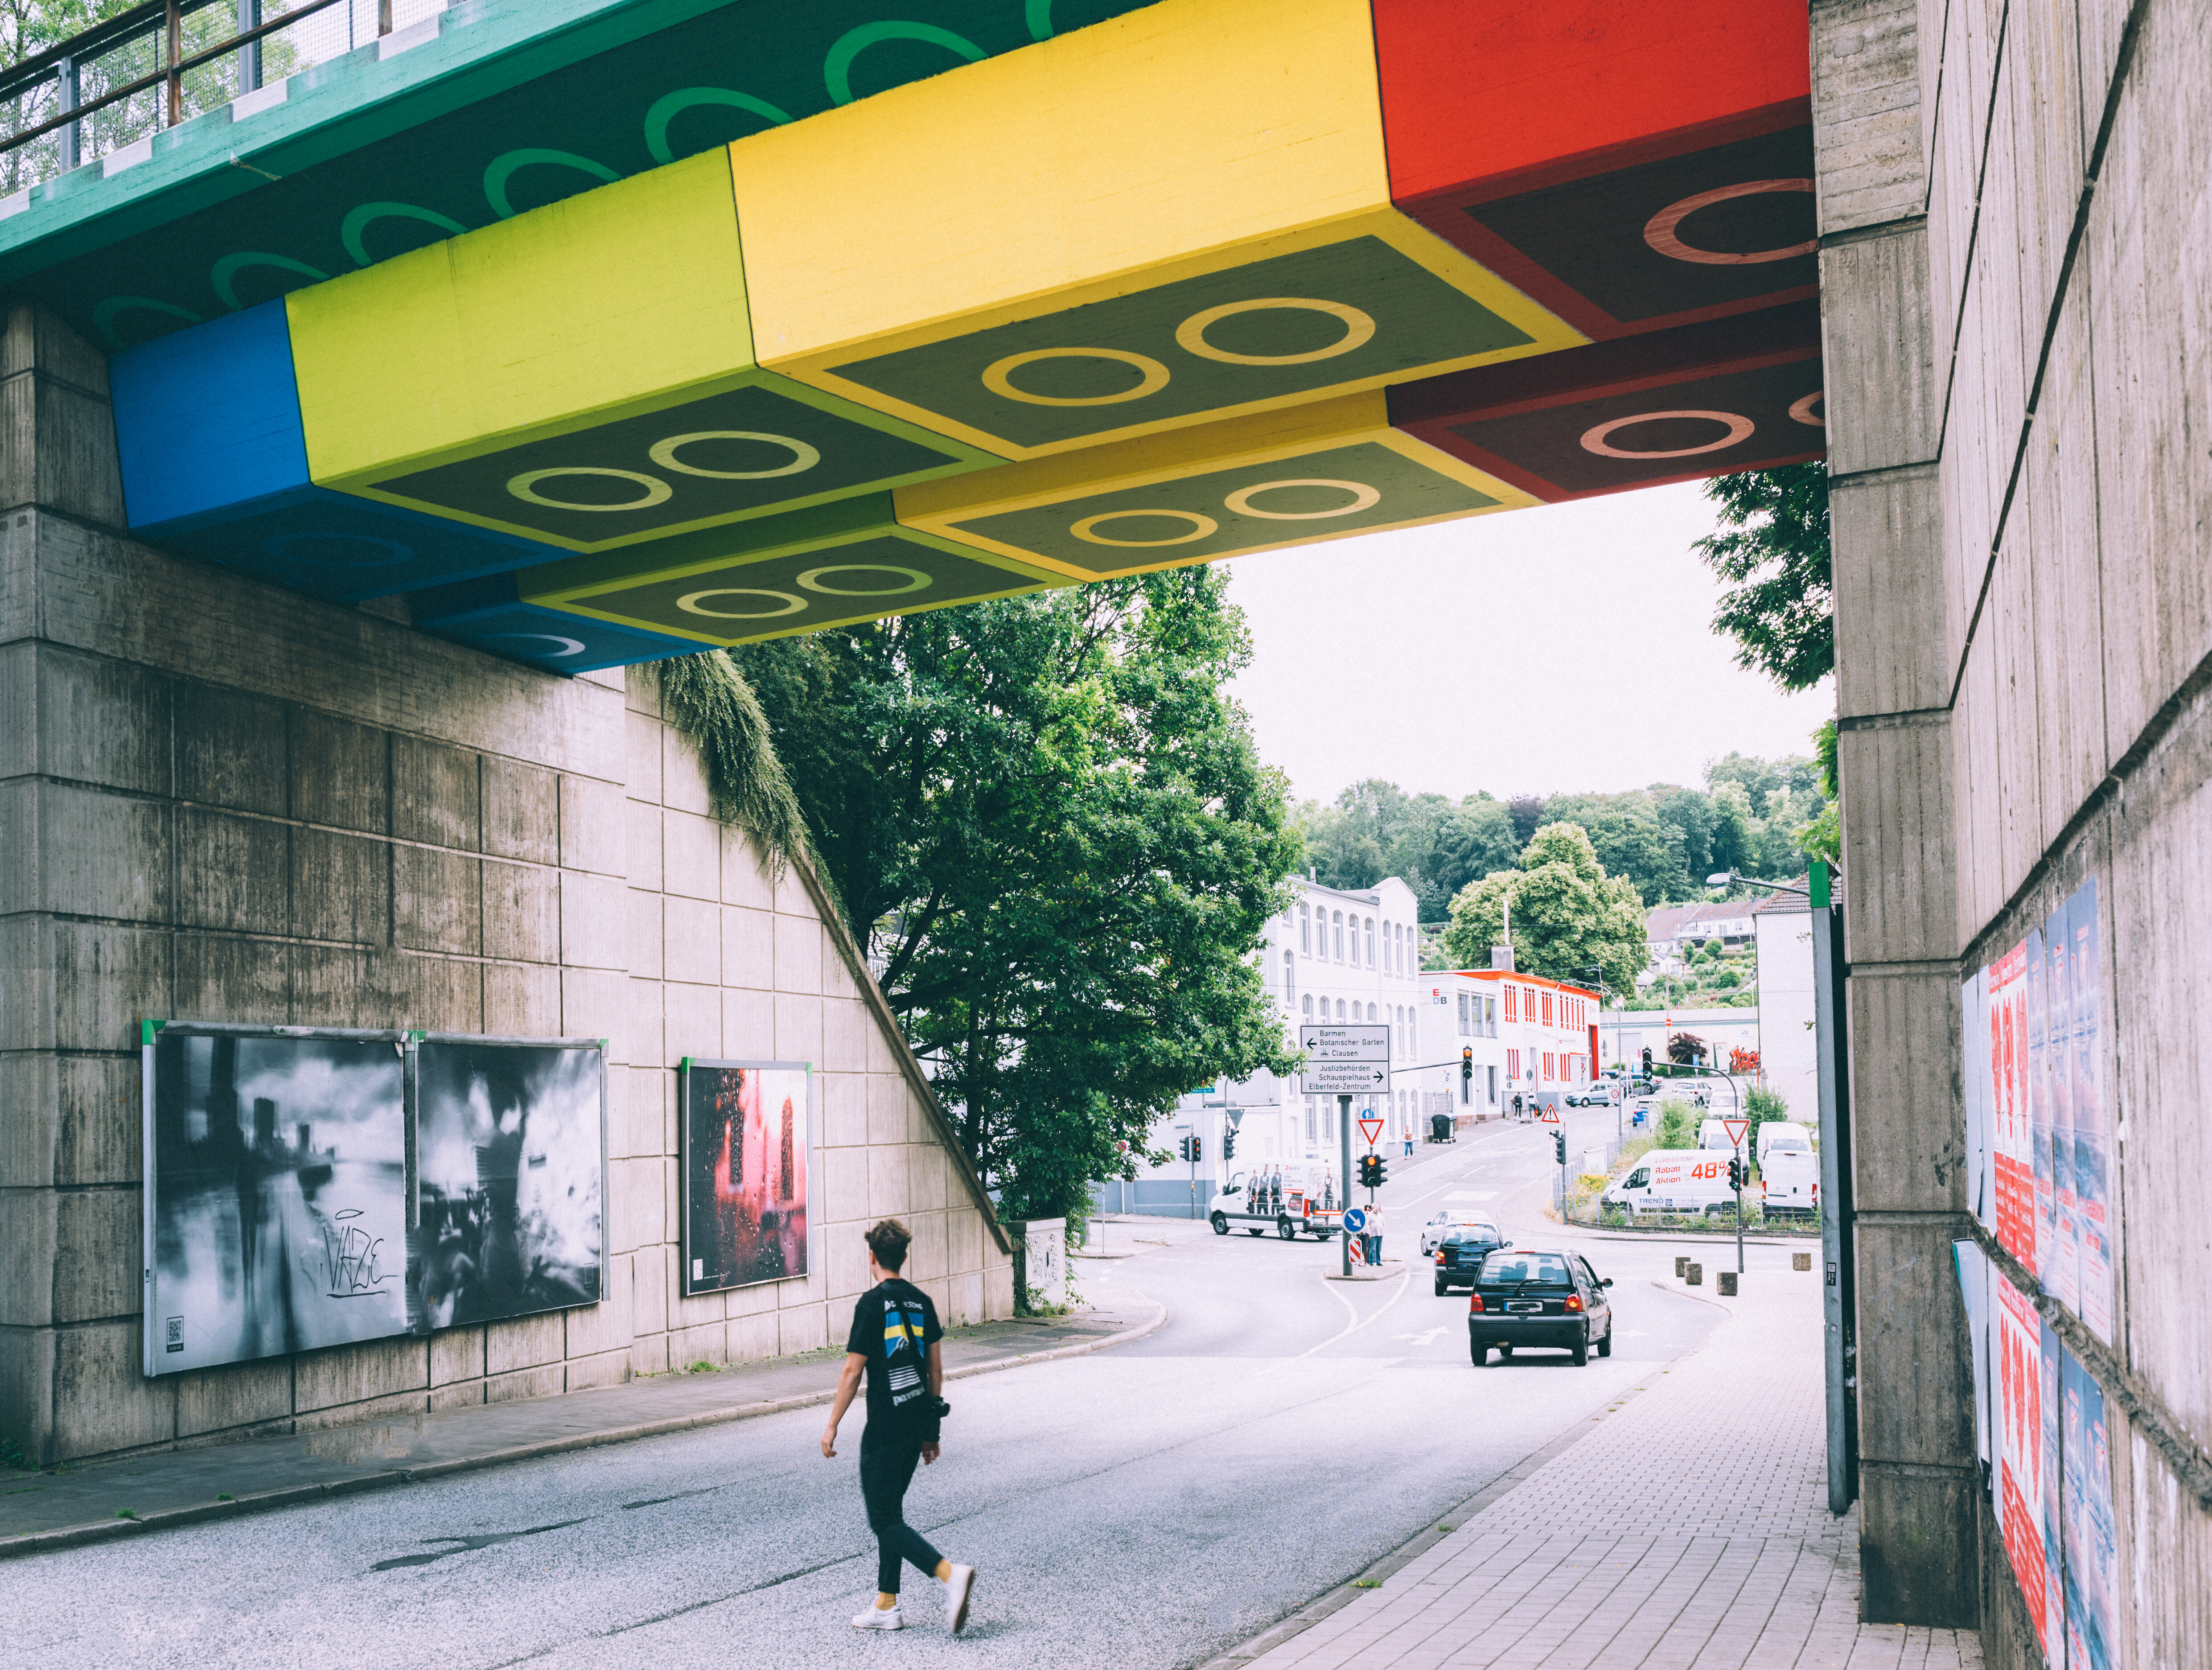 Die "Legobrücke" in Wuppertal, vom Künstler Martin Heuwold bemalt in Form von überdimensionalen Legosteinen